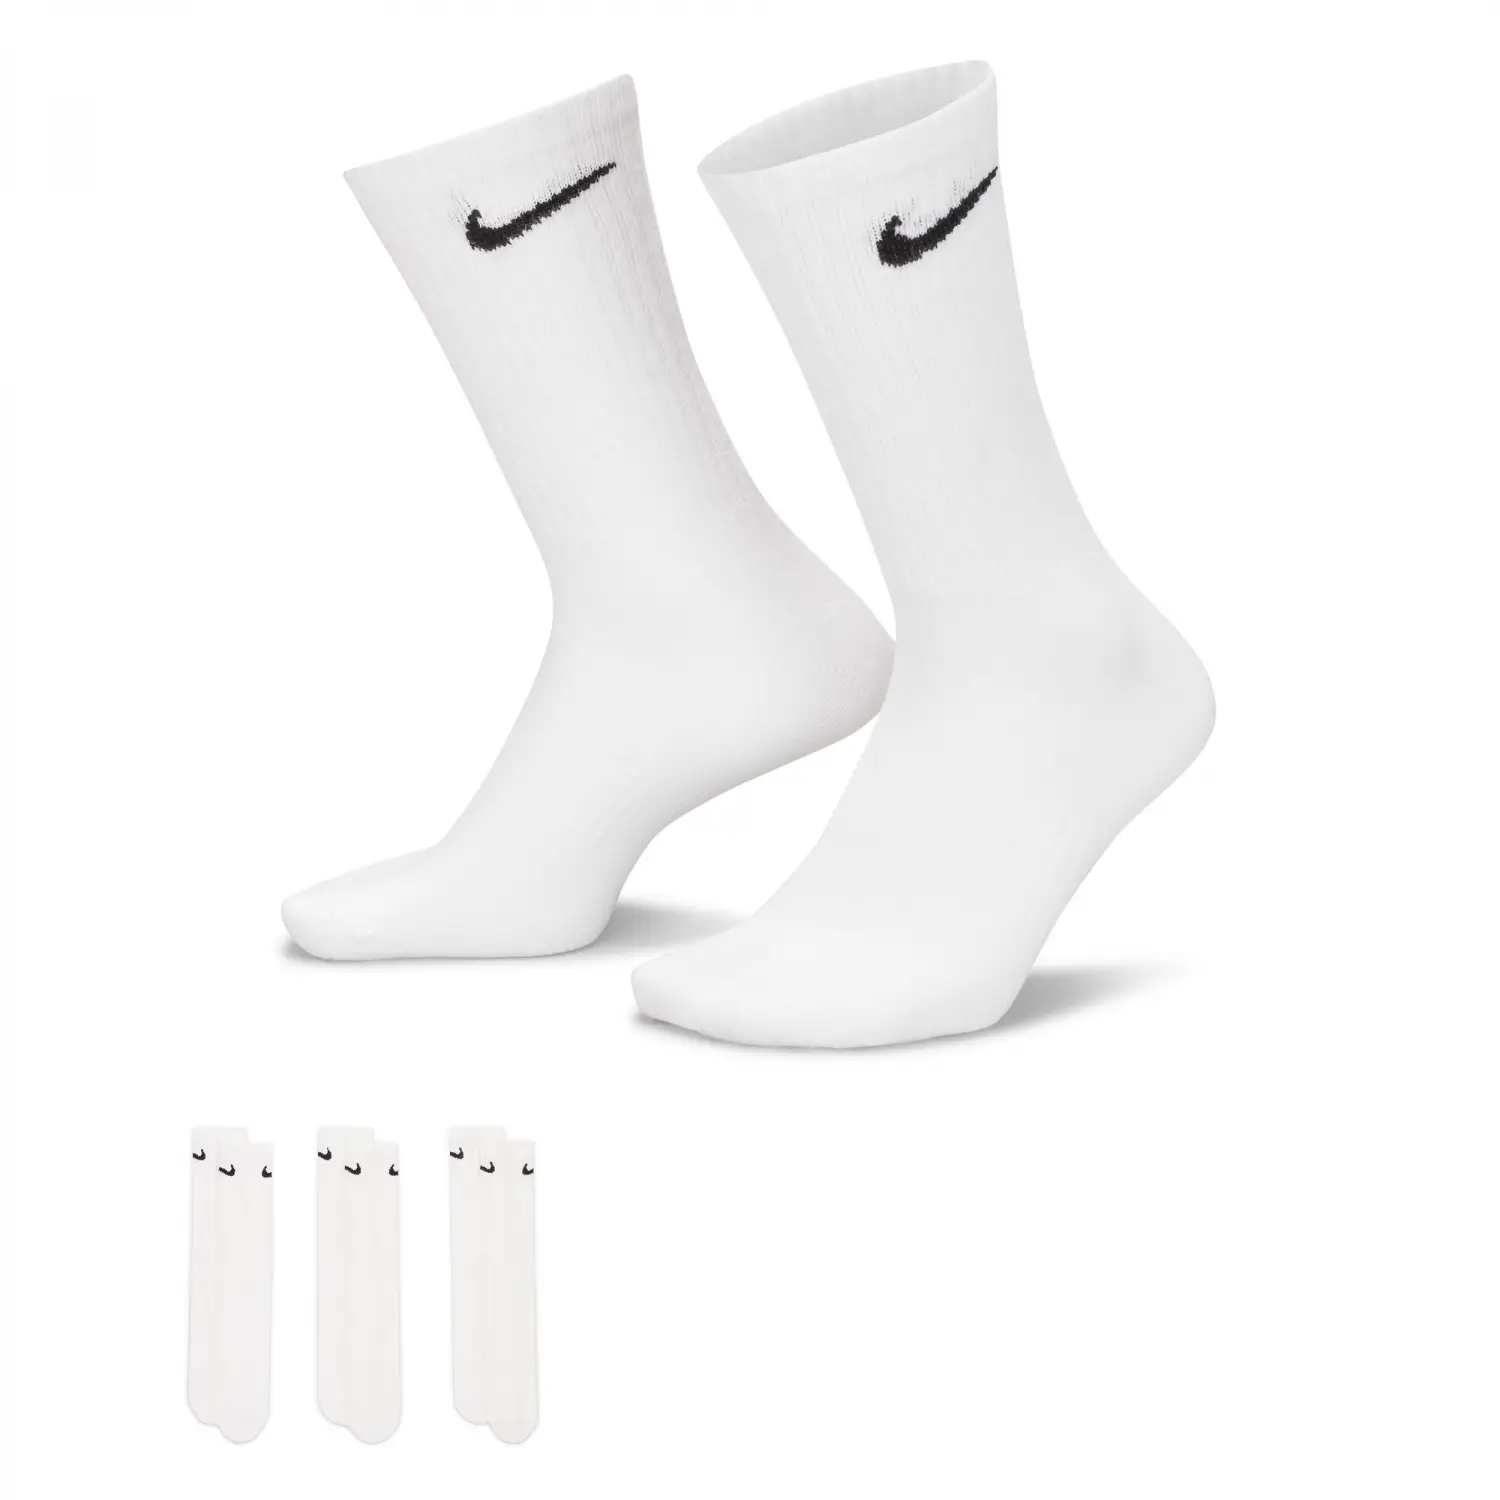 NIKE Everyday Lightweight Beyaz Erkek Çorap - SX7676-100